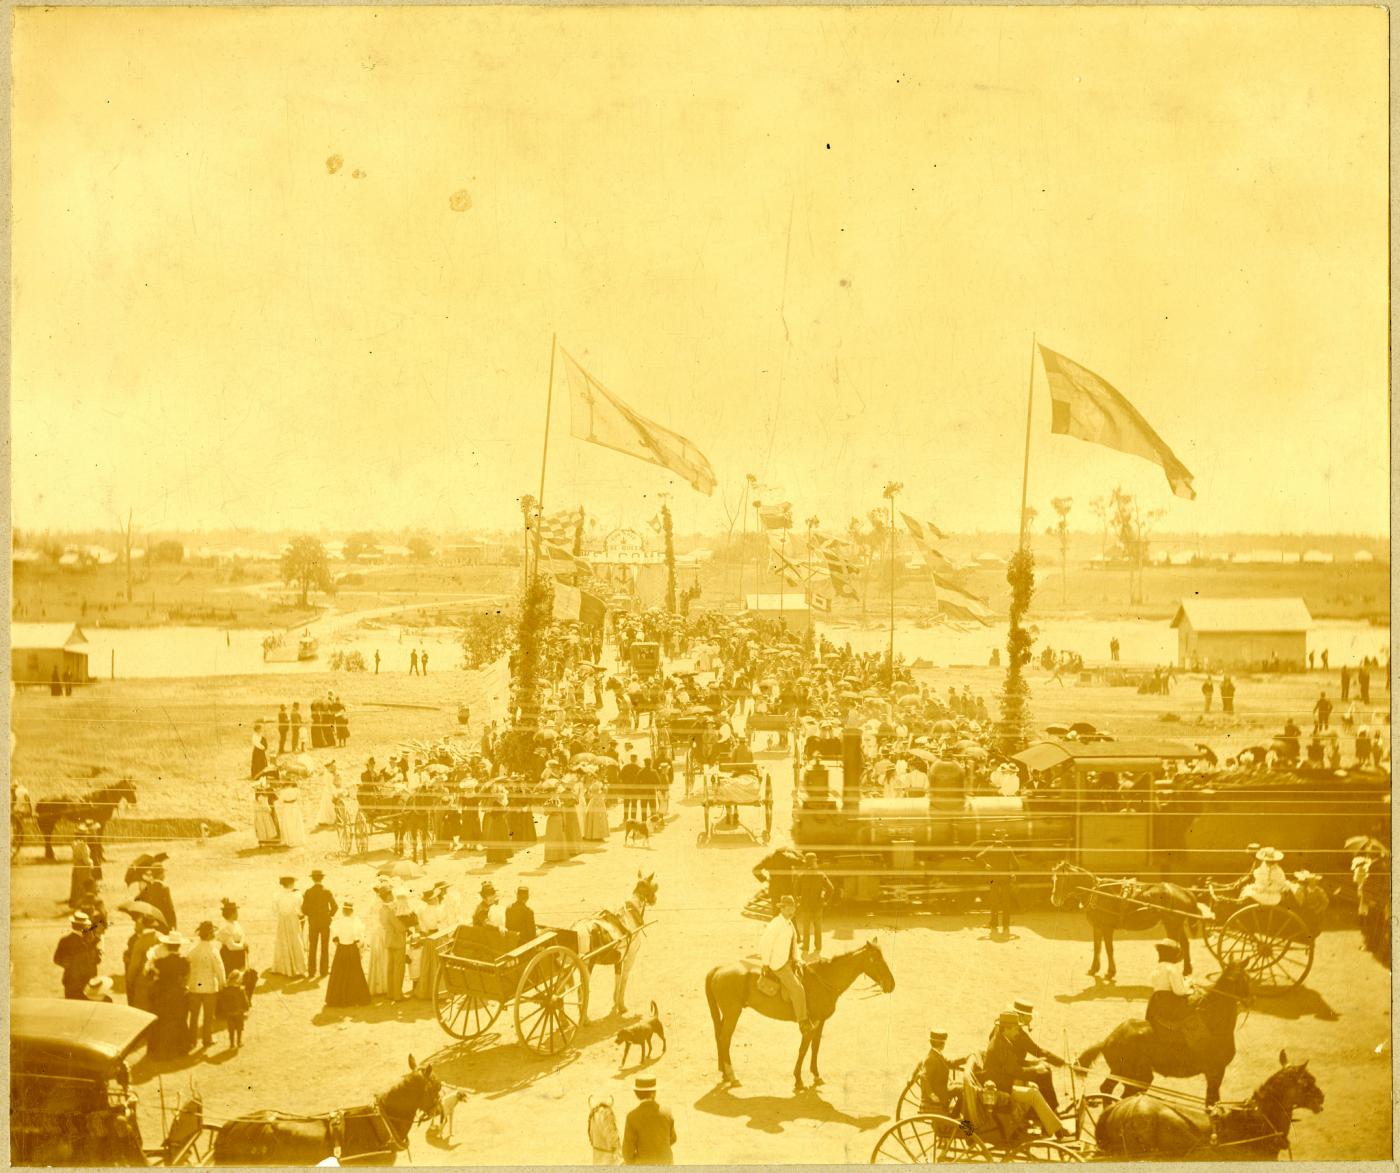 Opening Ceremony of the Burnett River road bridge, 24 August 1900